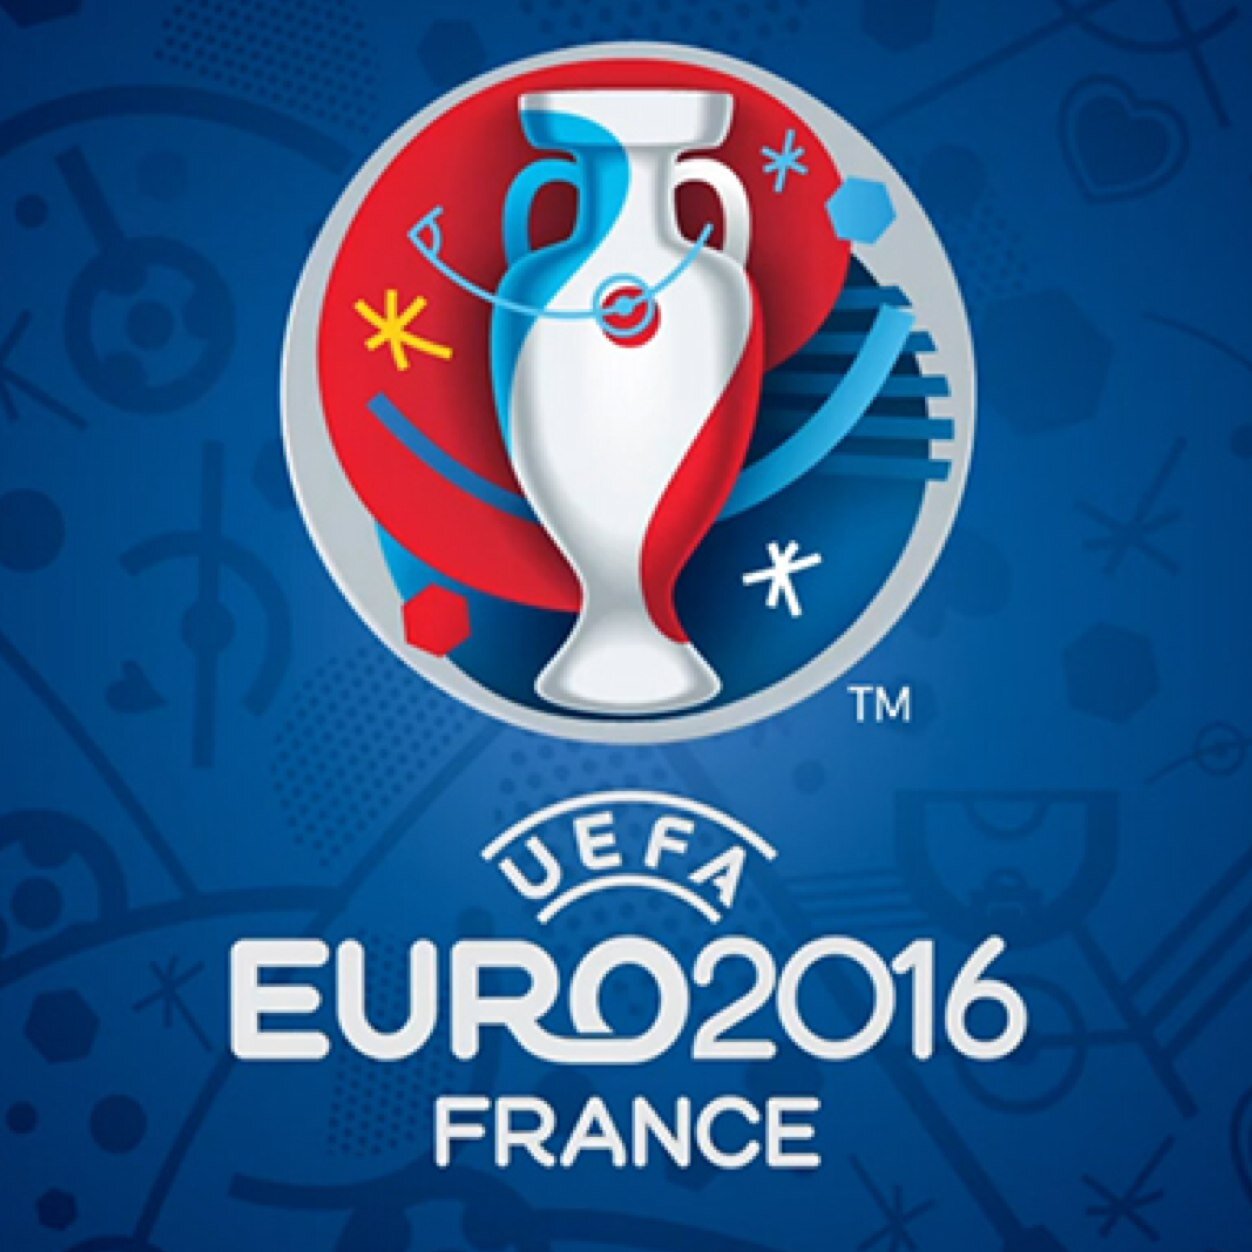 الاتحاد الاوروبي لكرة القدم يؤكد إقامة بطولة أوروبا 2016 في فرنسا